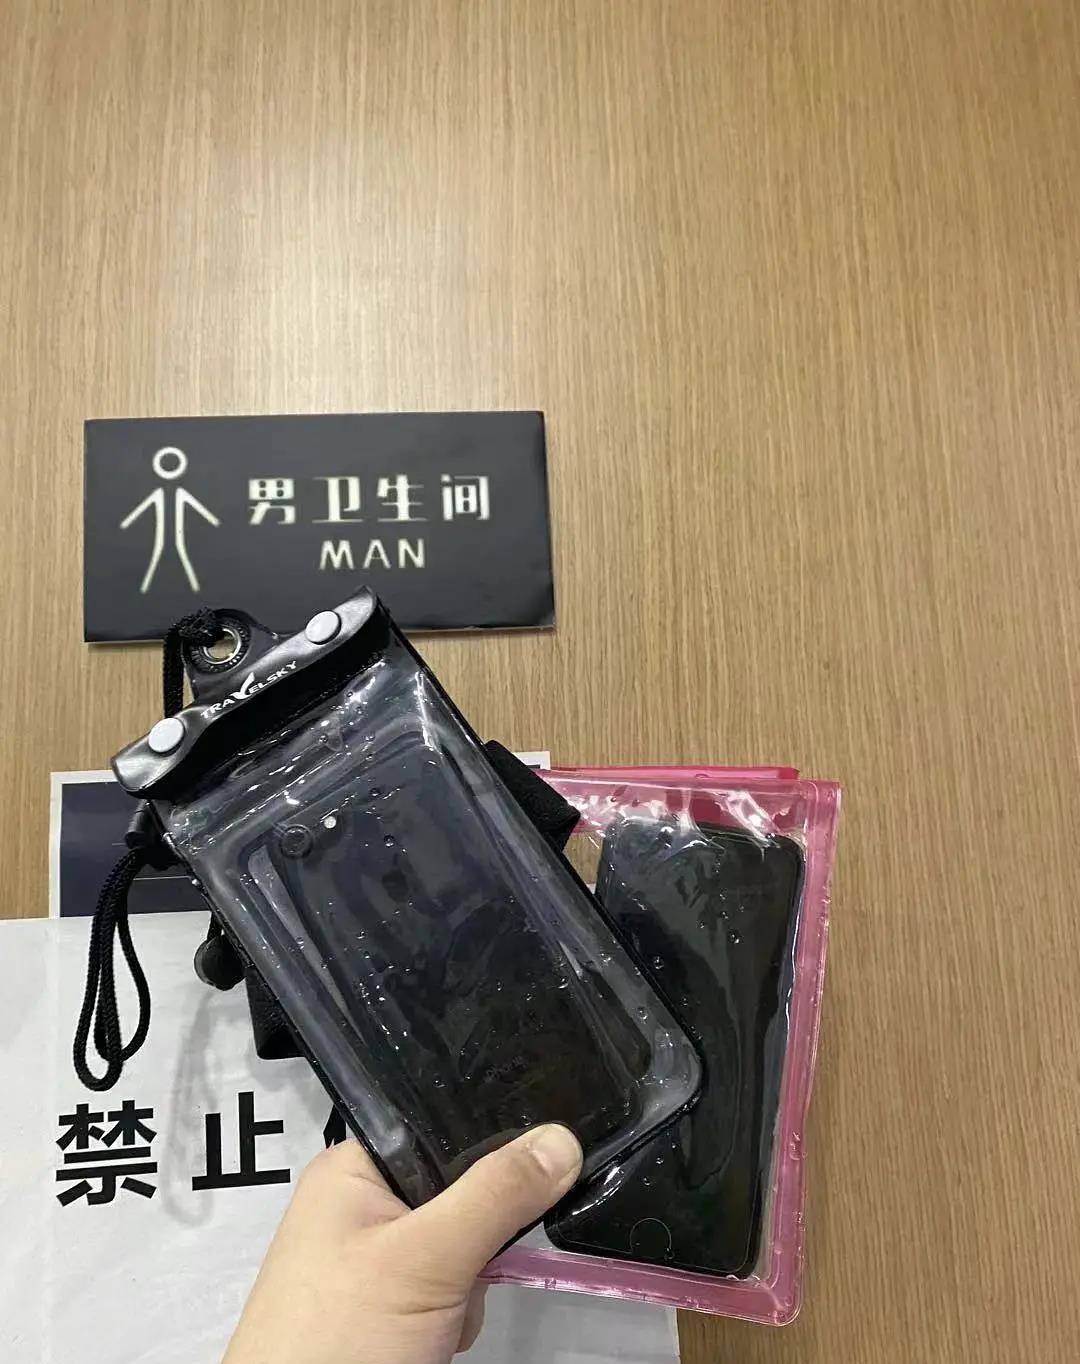 手機防水袋品牌排行榜_“手機掉烏江8個月后回來了”當事人:很穿越,防水袋是普通品牌